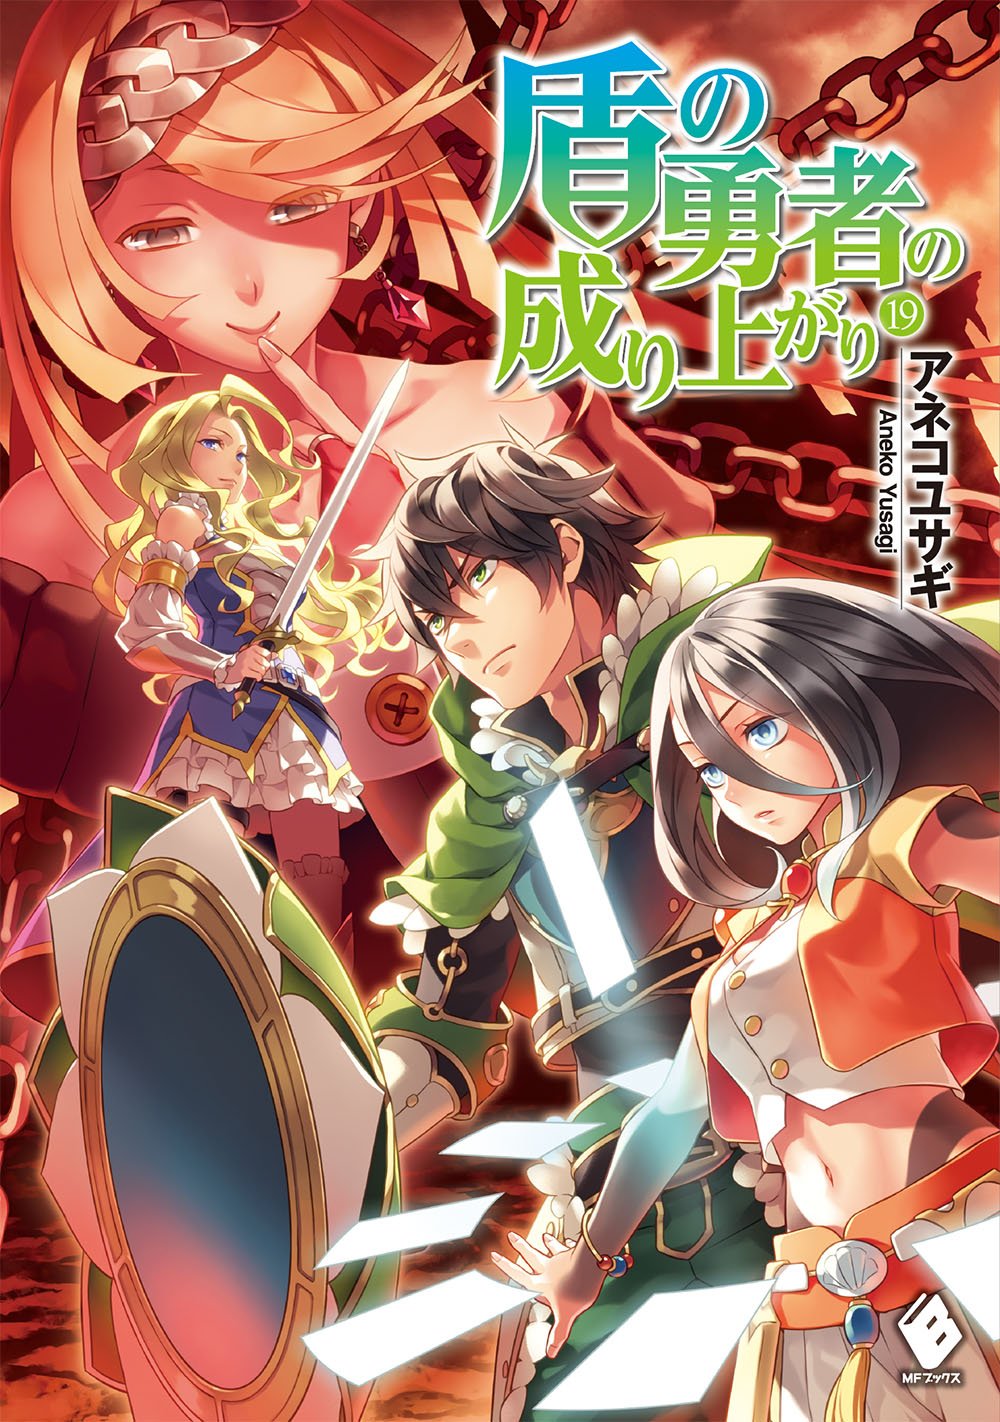 Light Novel Volume 8, The Rising of the Shield Hero Wiki